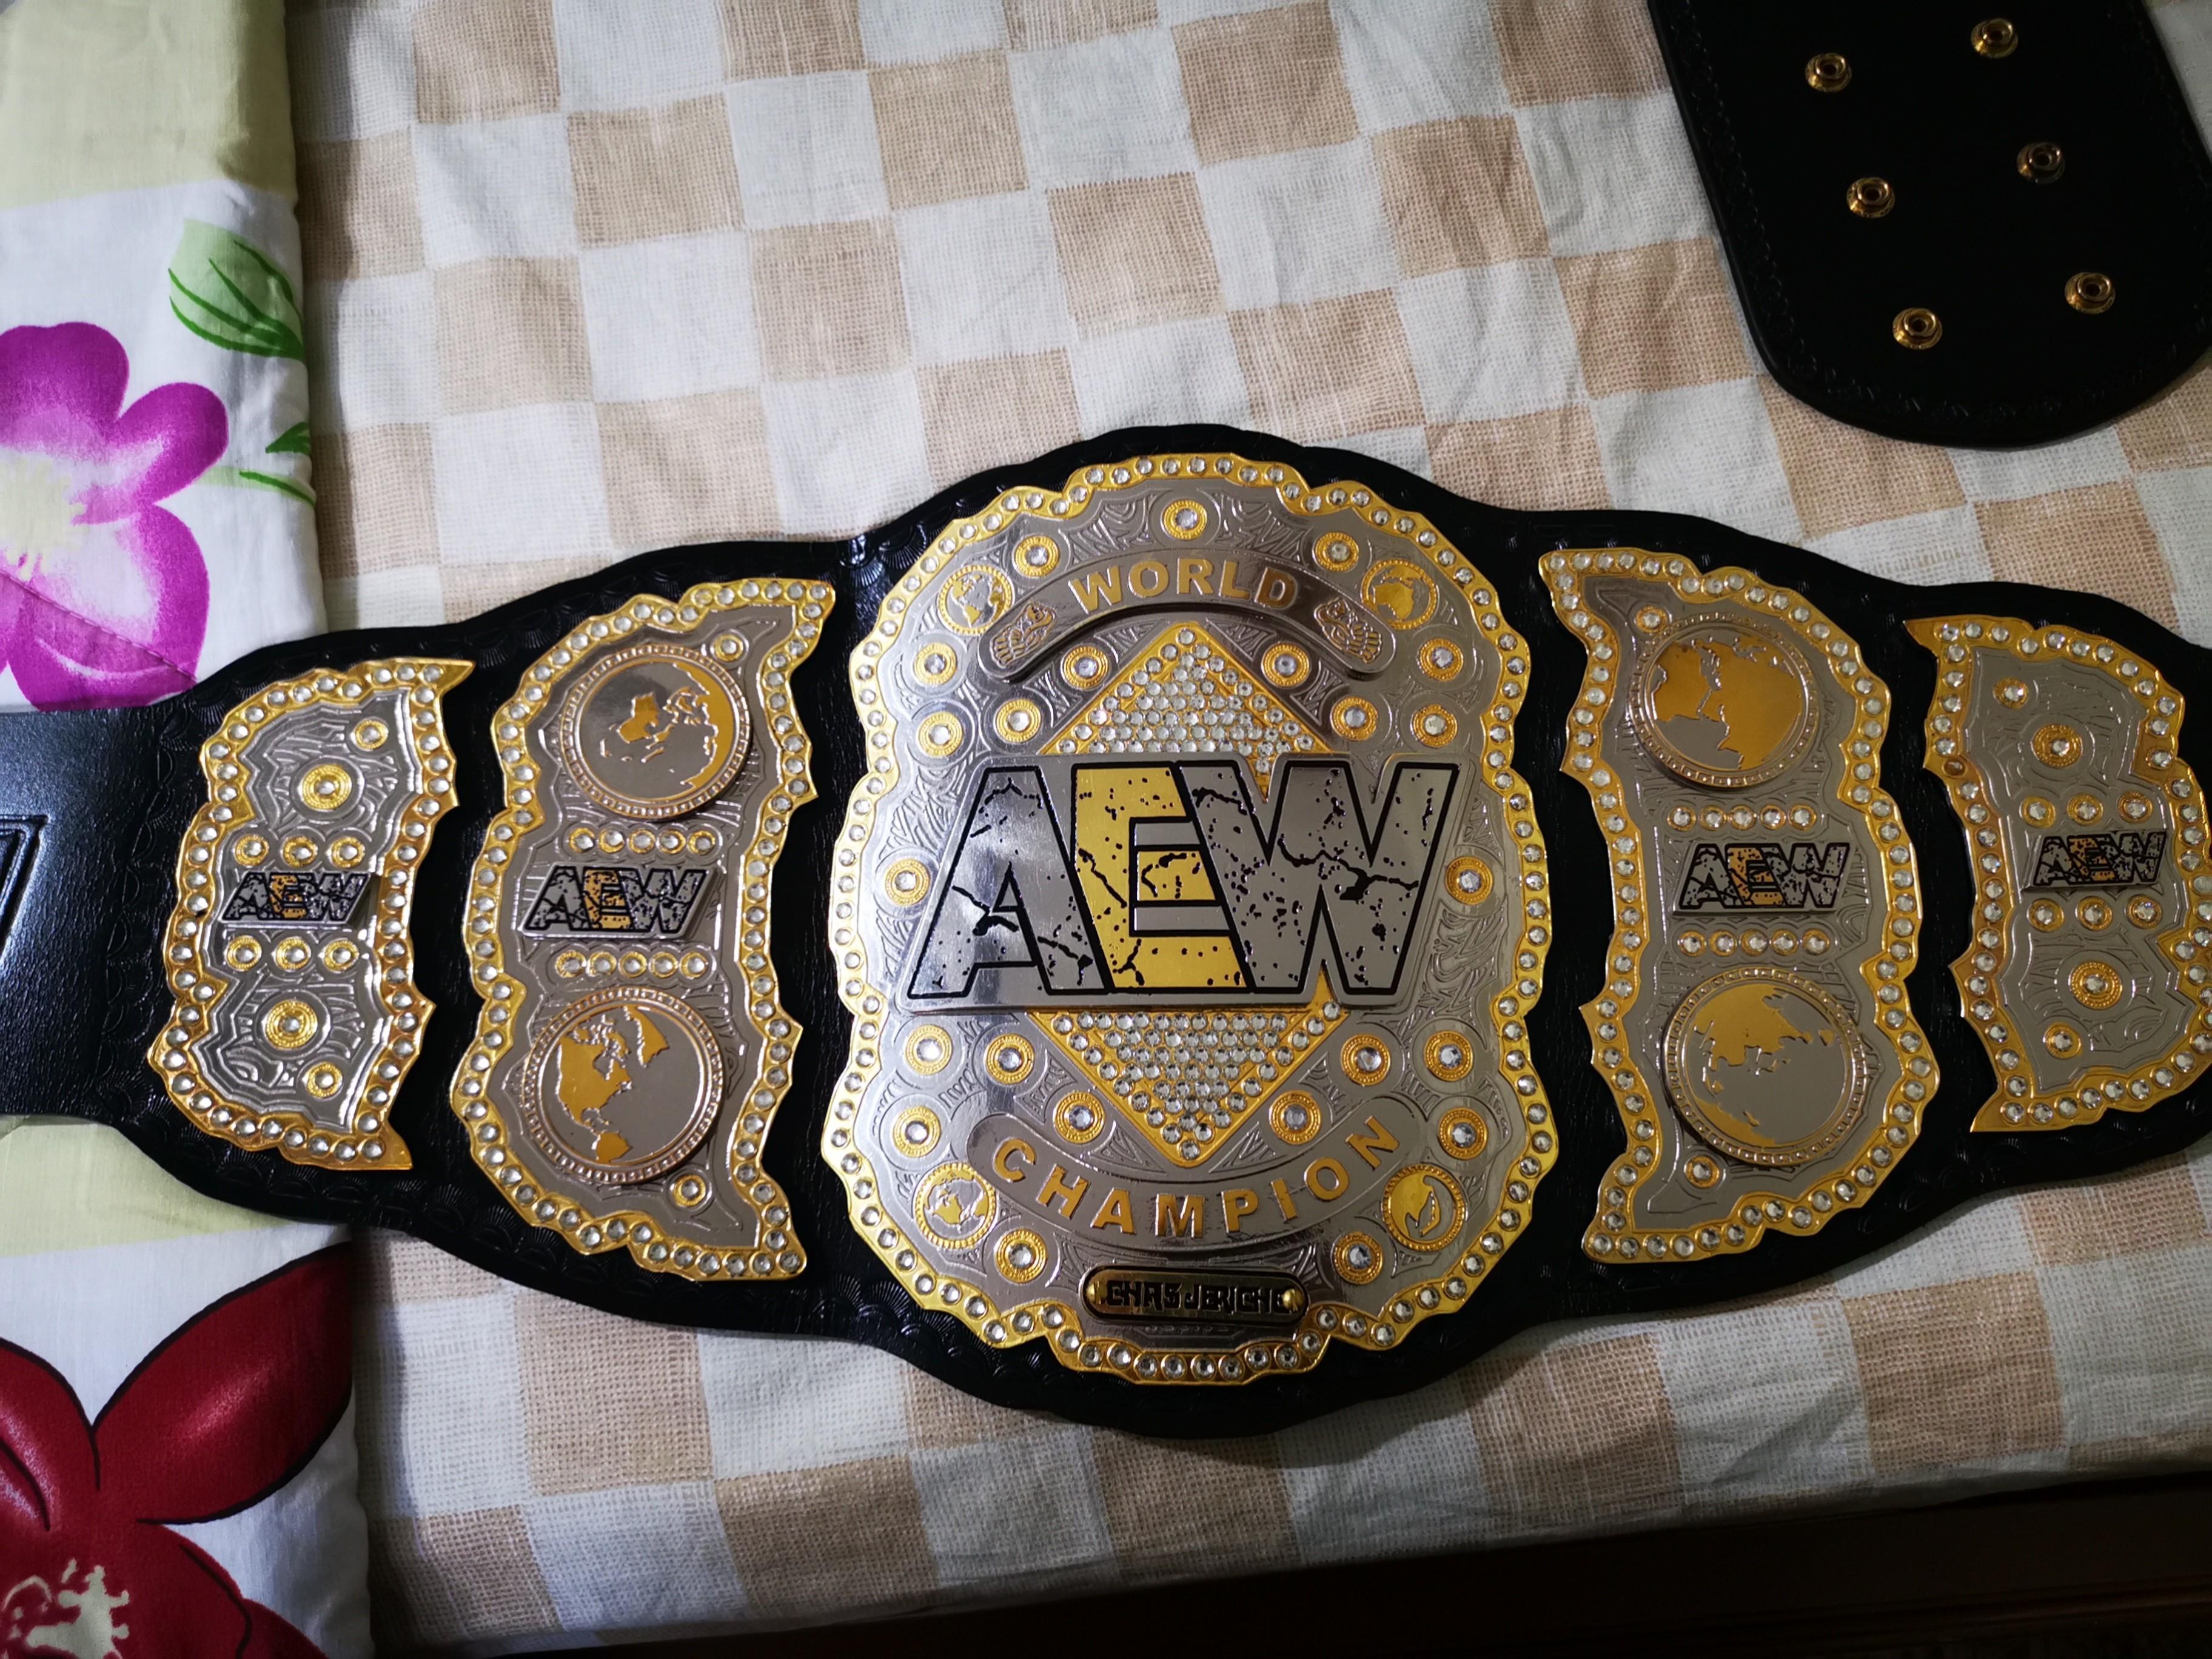 Wwe 2014 Title Belt